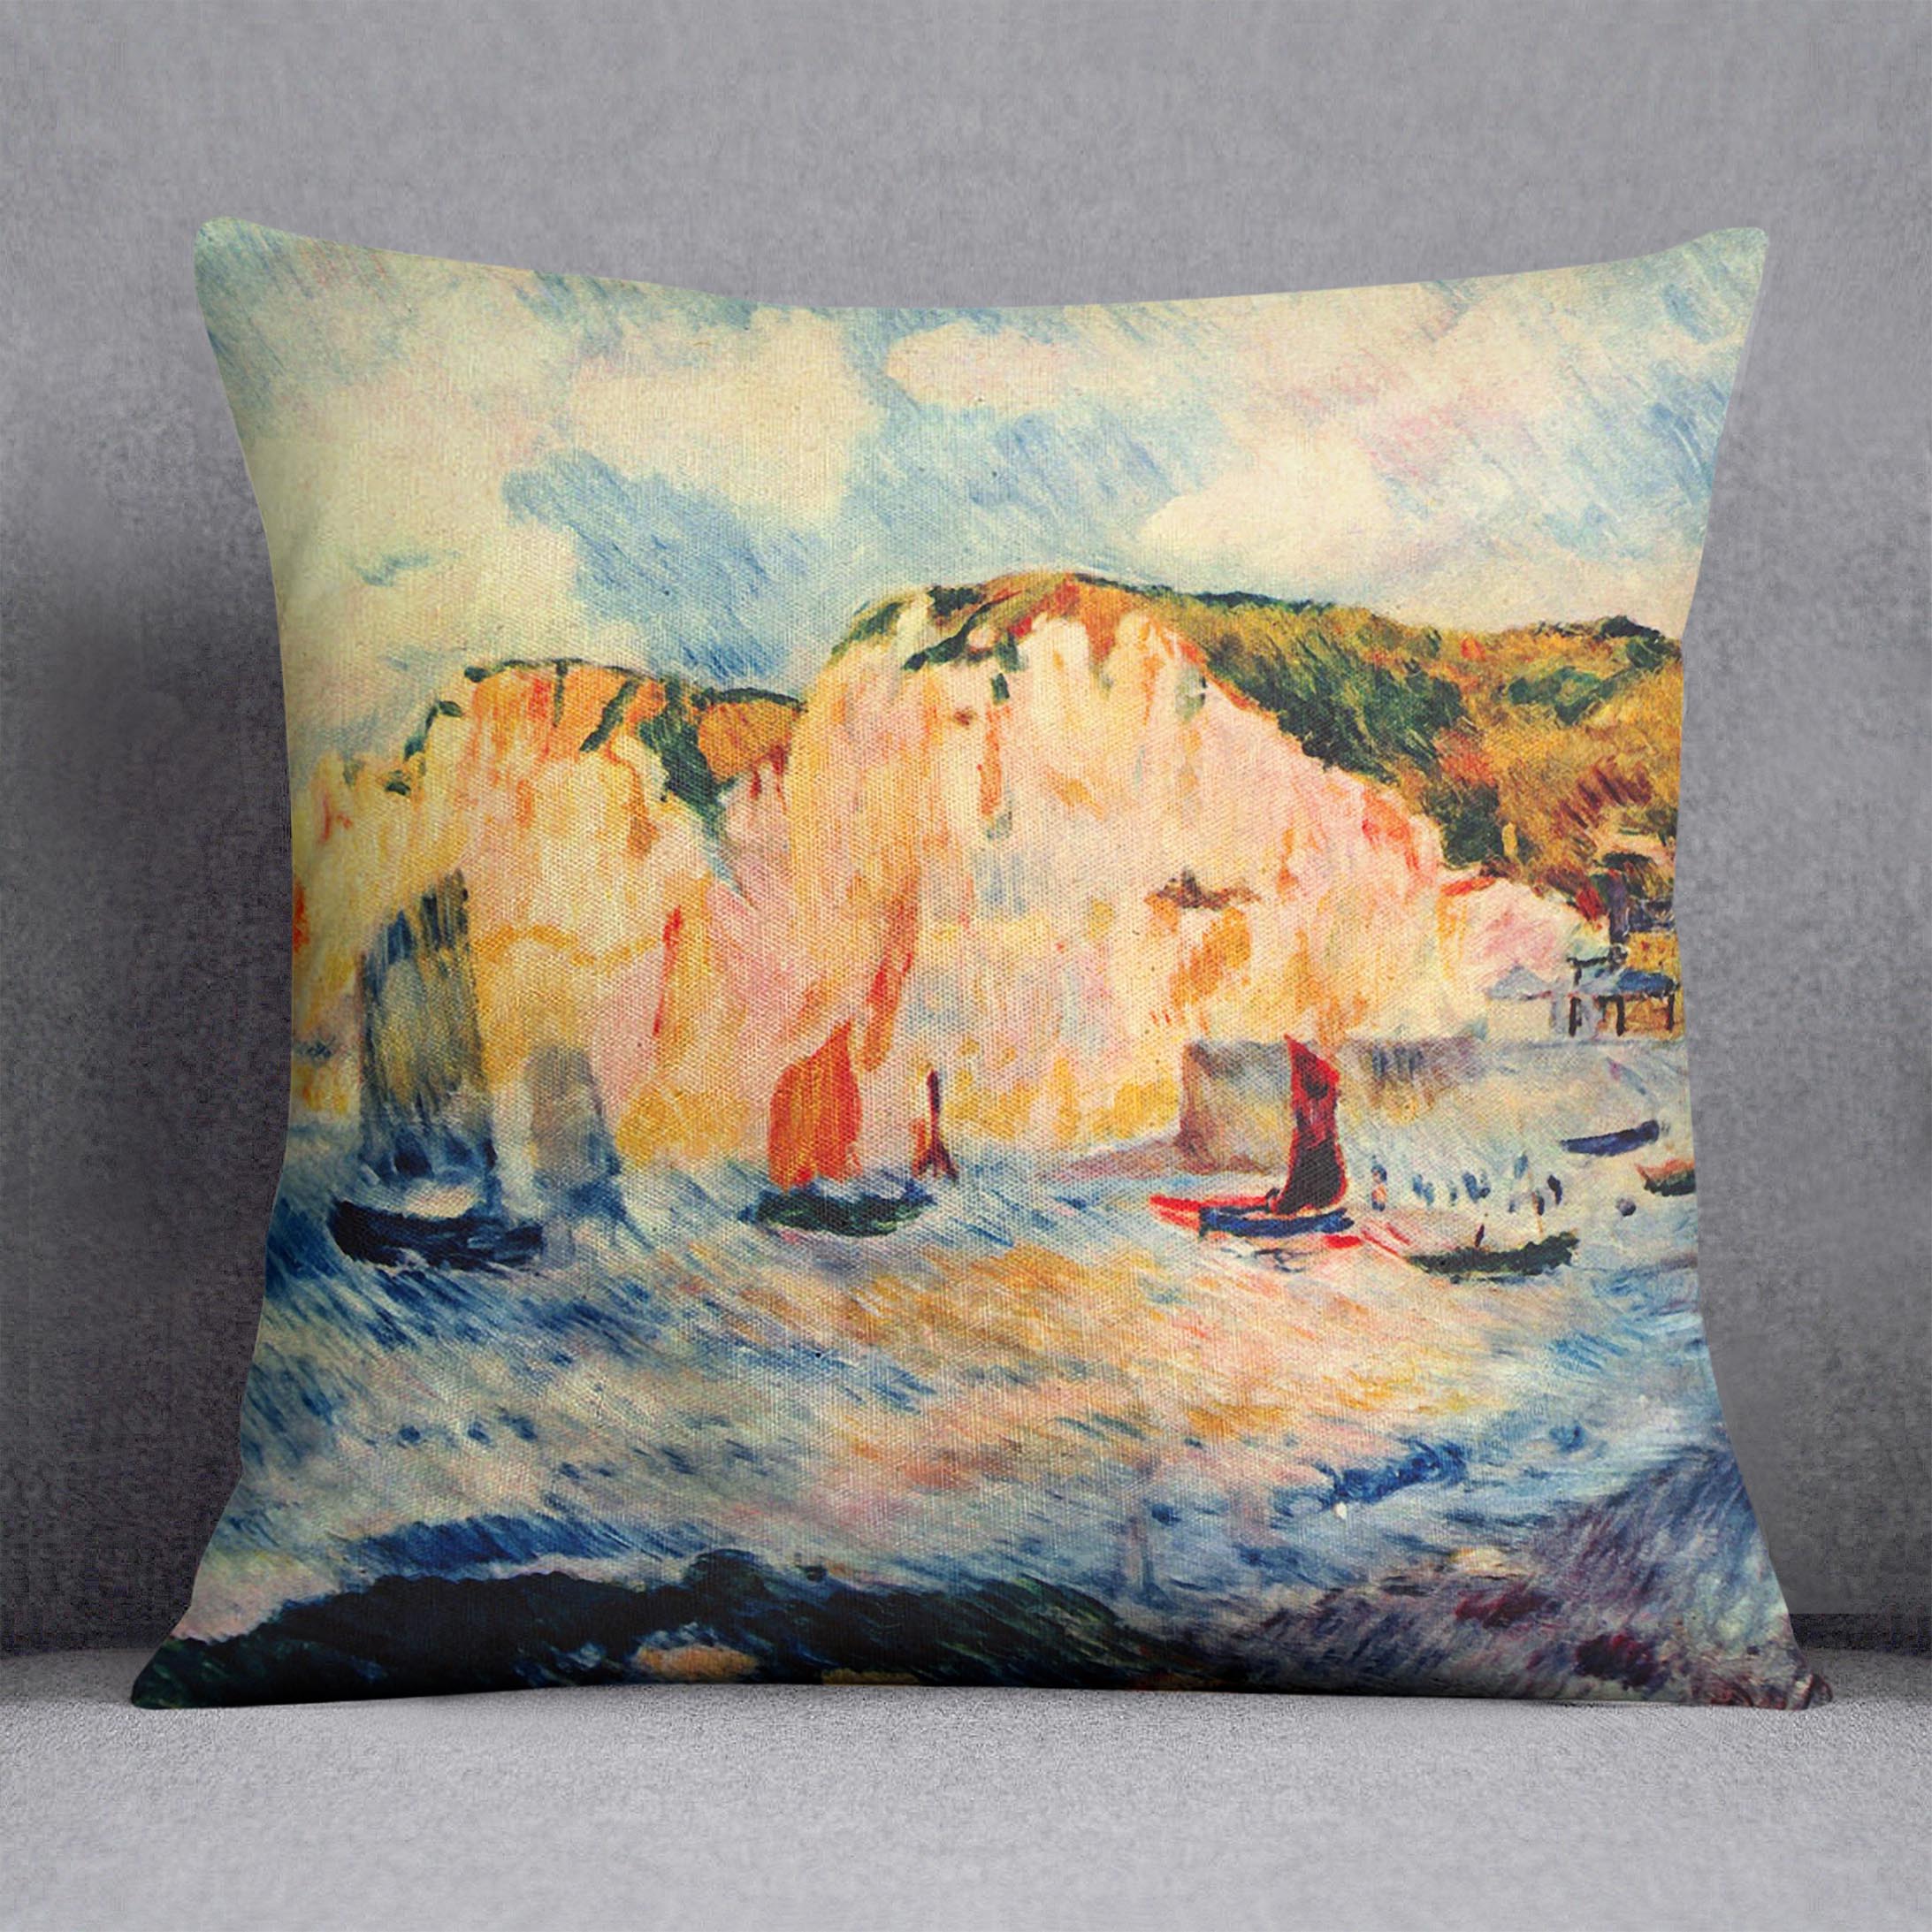 Sea and cliffs by Renoir Cushion